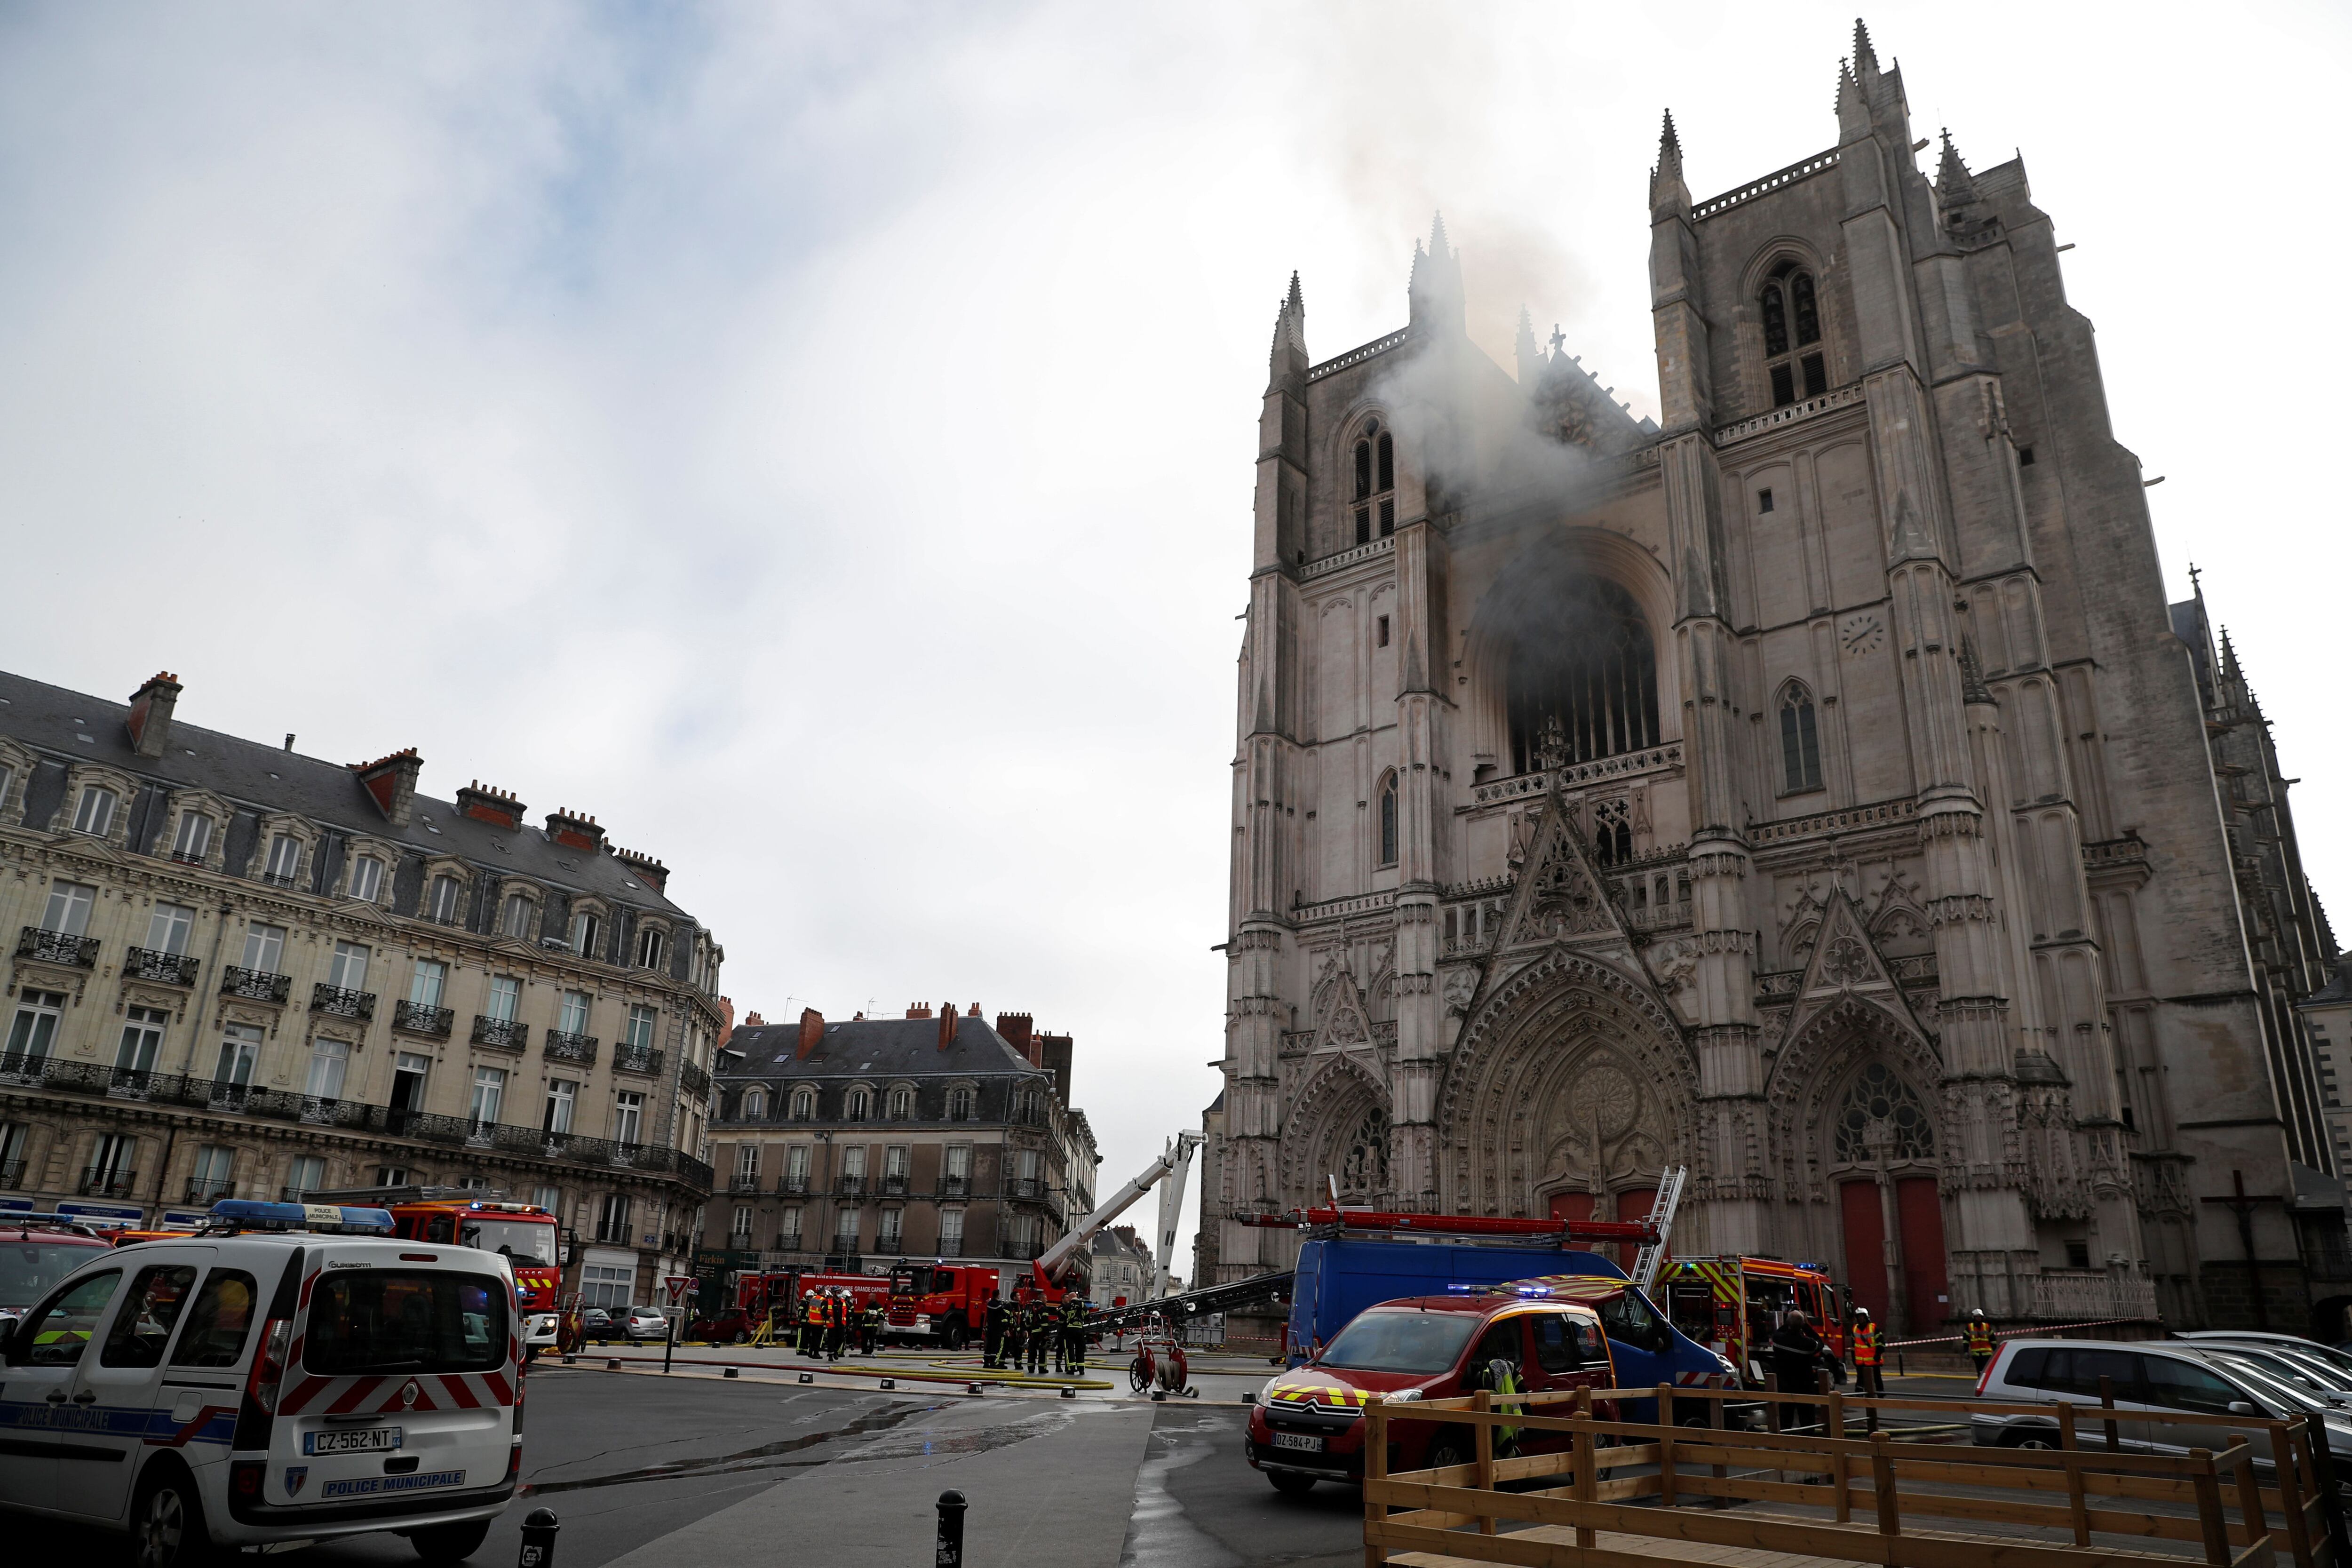 Imagem da catedral com a zona restrita e os bombeiros trabalhando para extinguir o fogo.